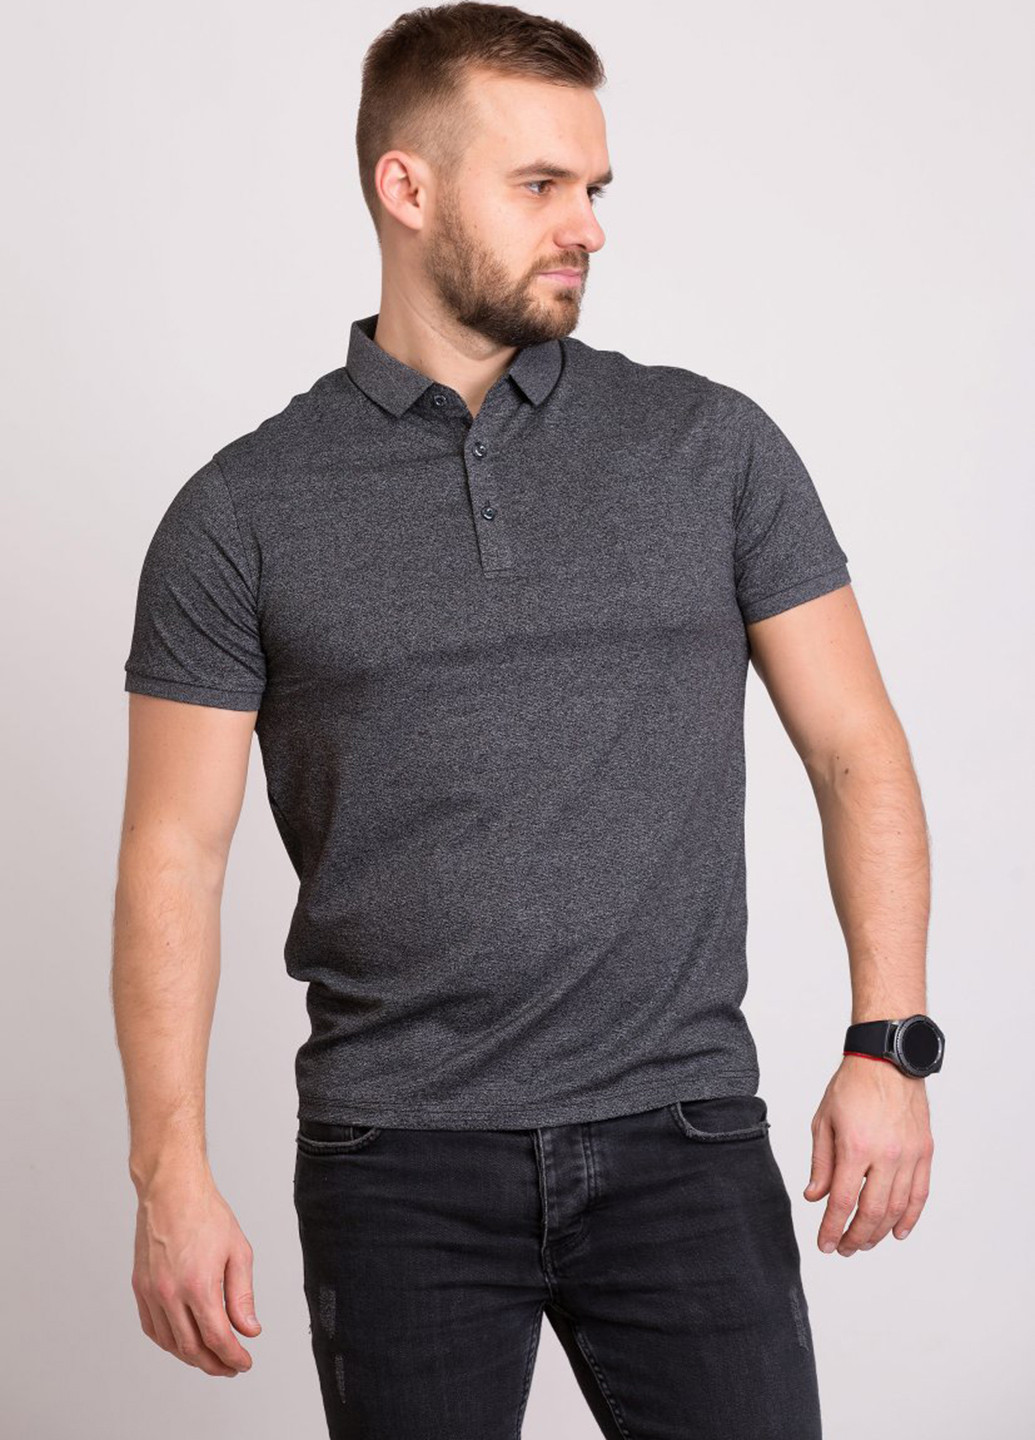 Темно-серая футболка-поло для мужчин Trend Collection меланжевая